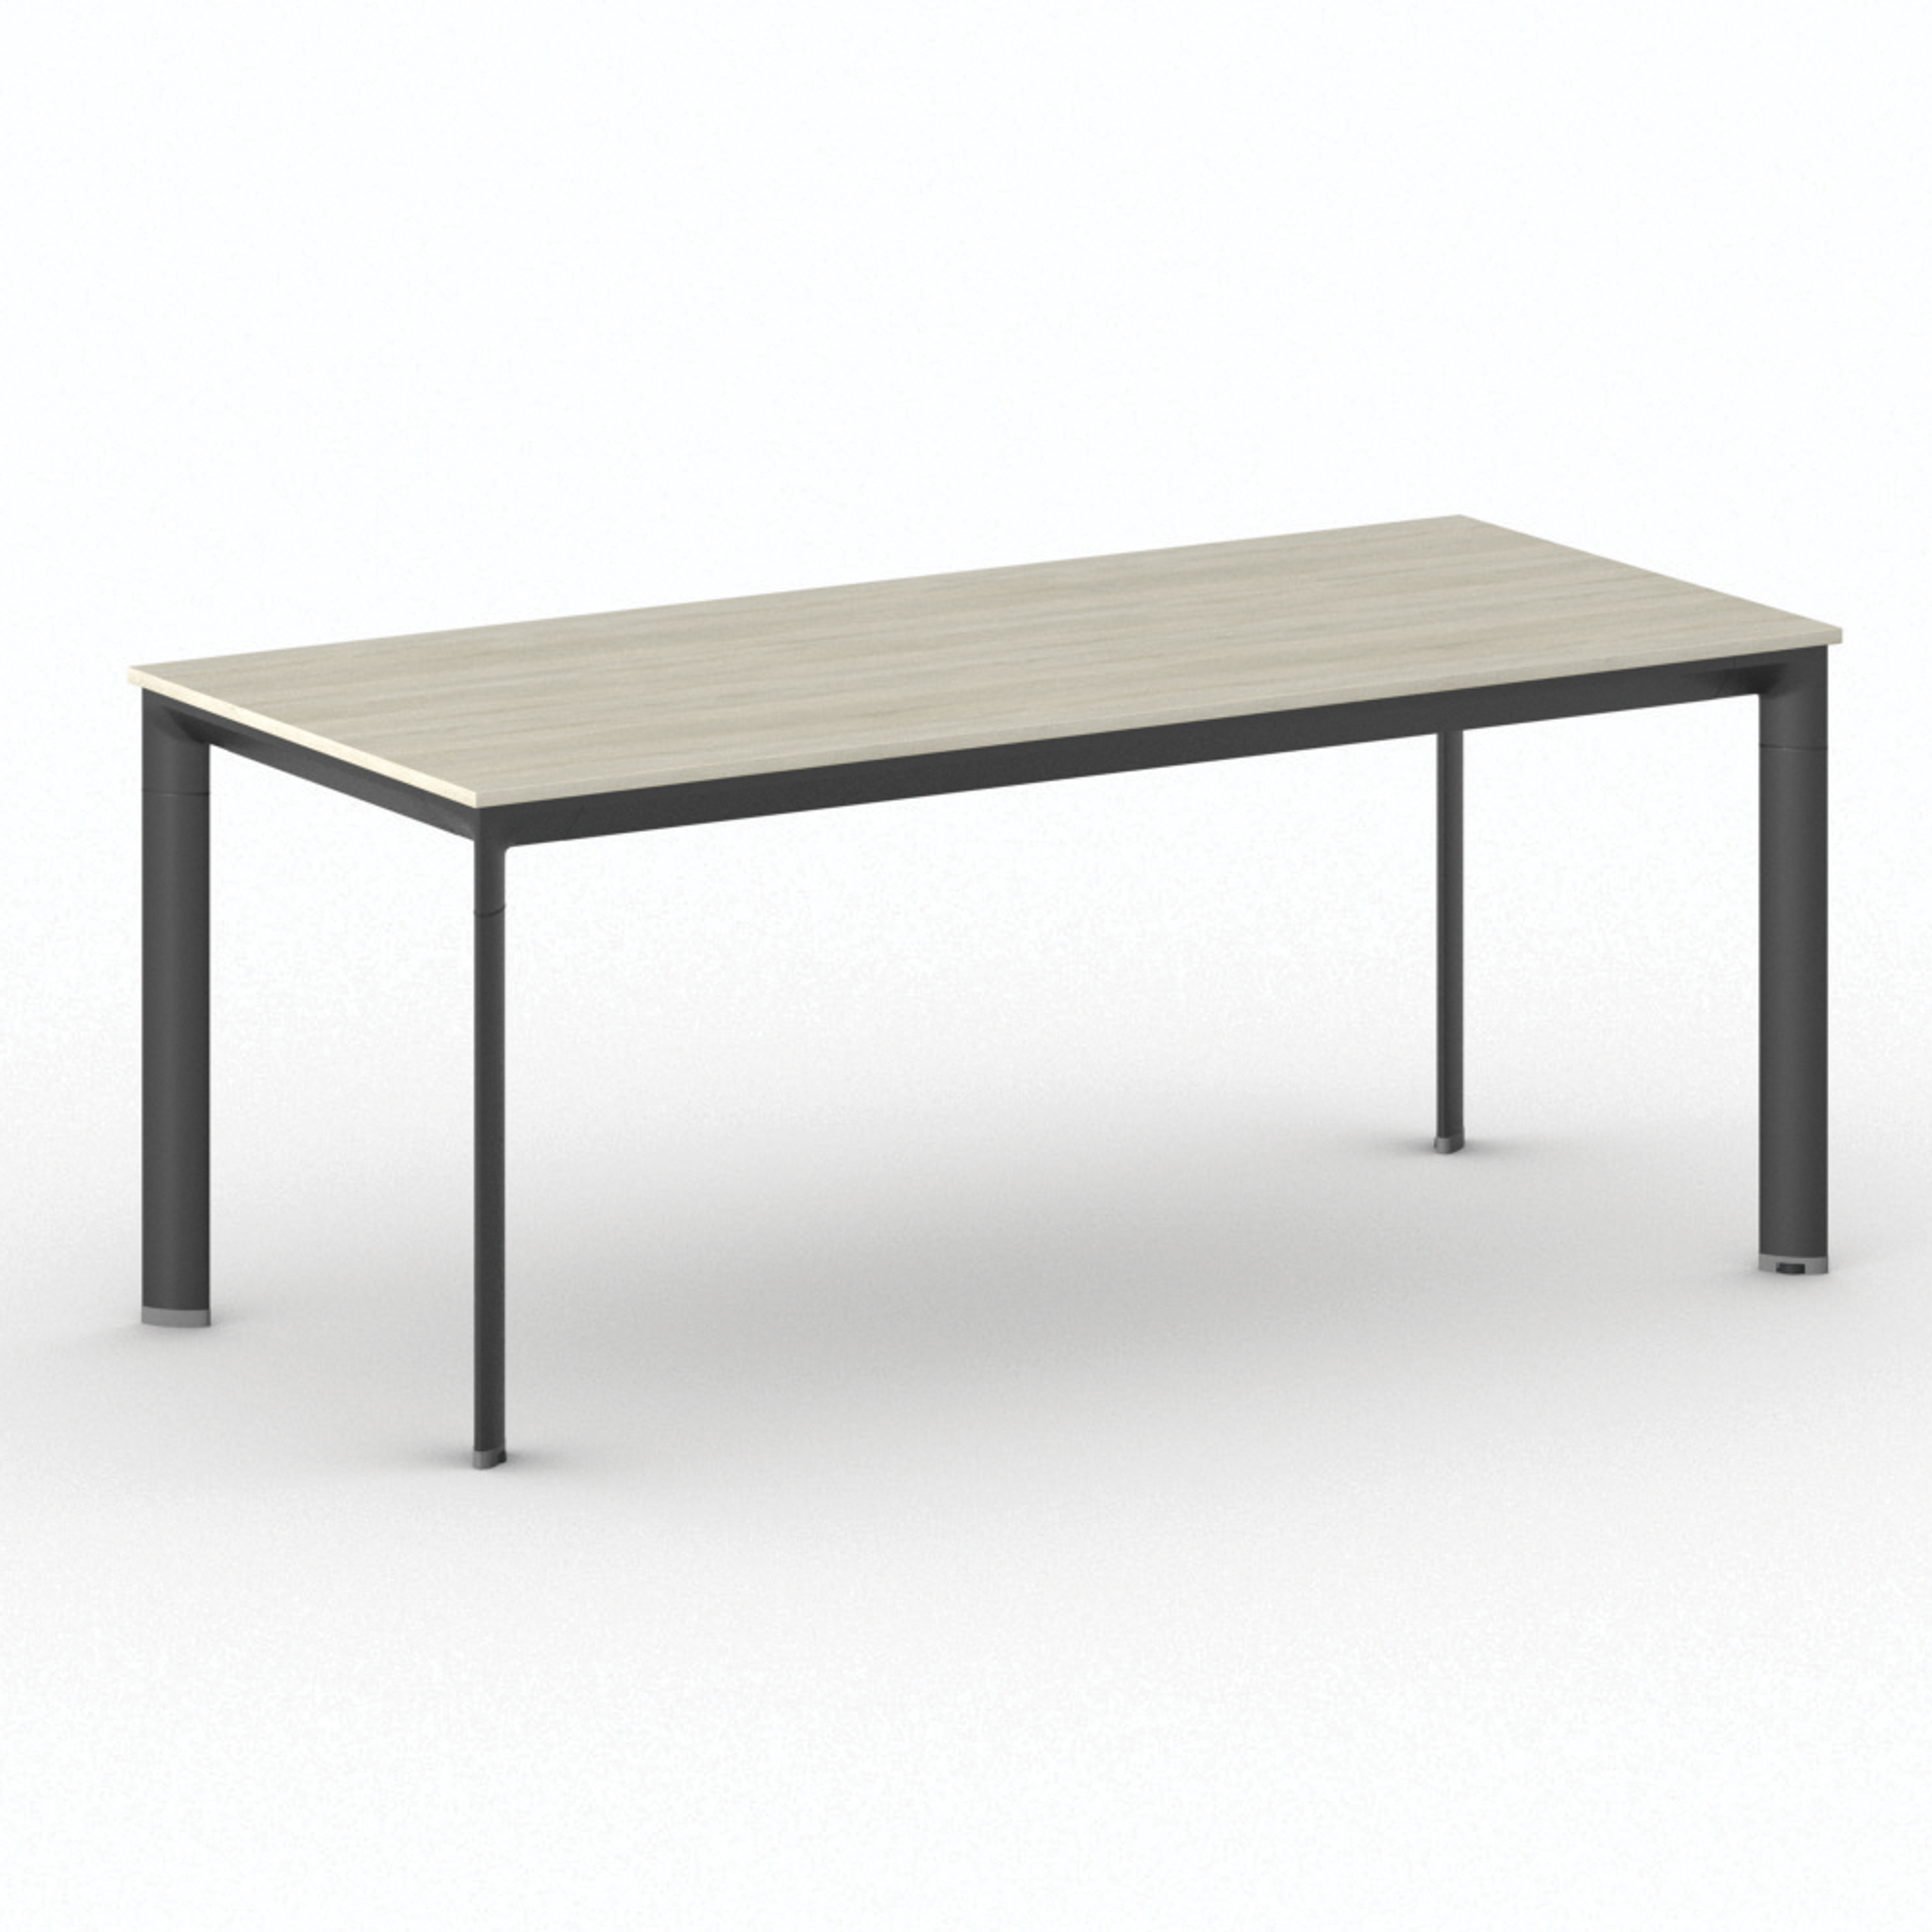 Kancelársky stôl PRIMO INVITATION, čierna podnož, 1800 x 800 mm, dub prírodný